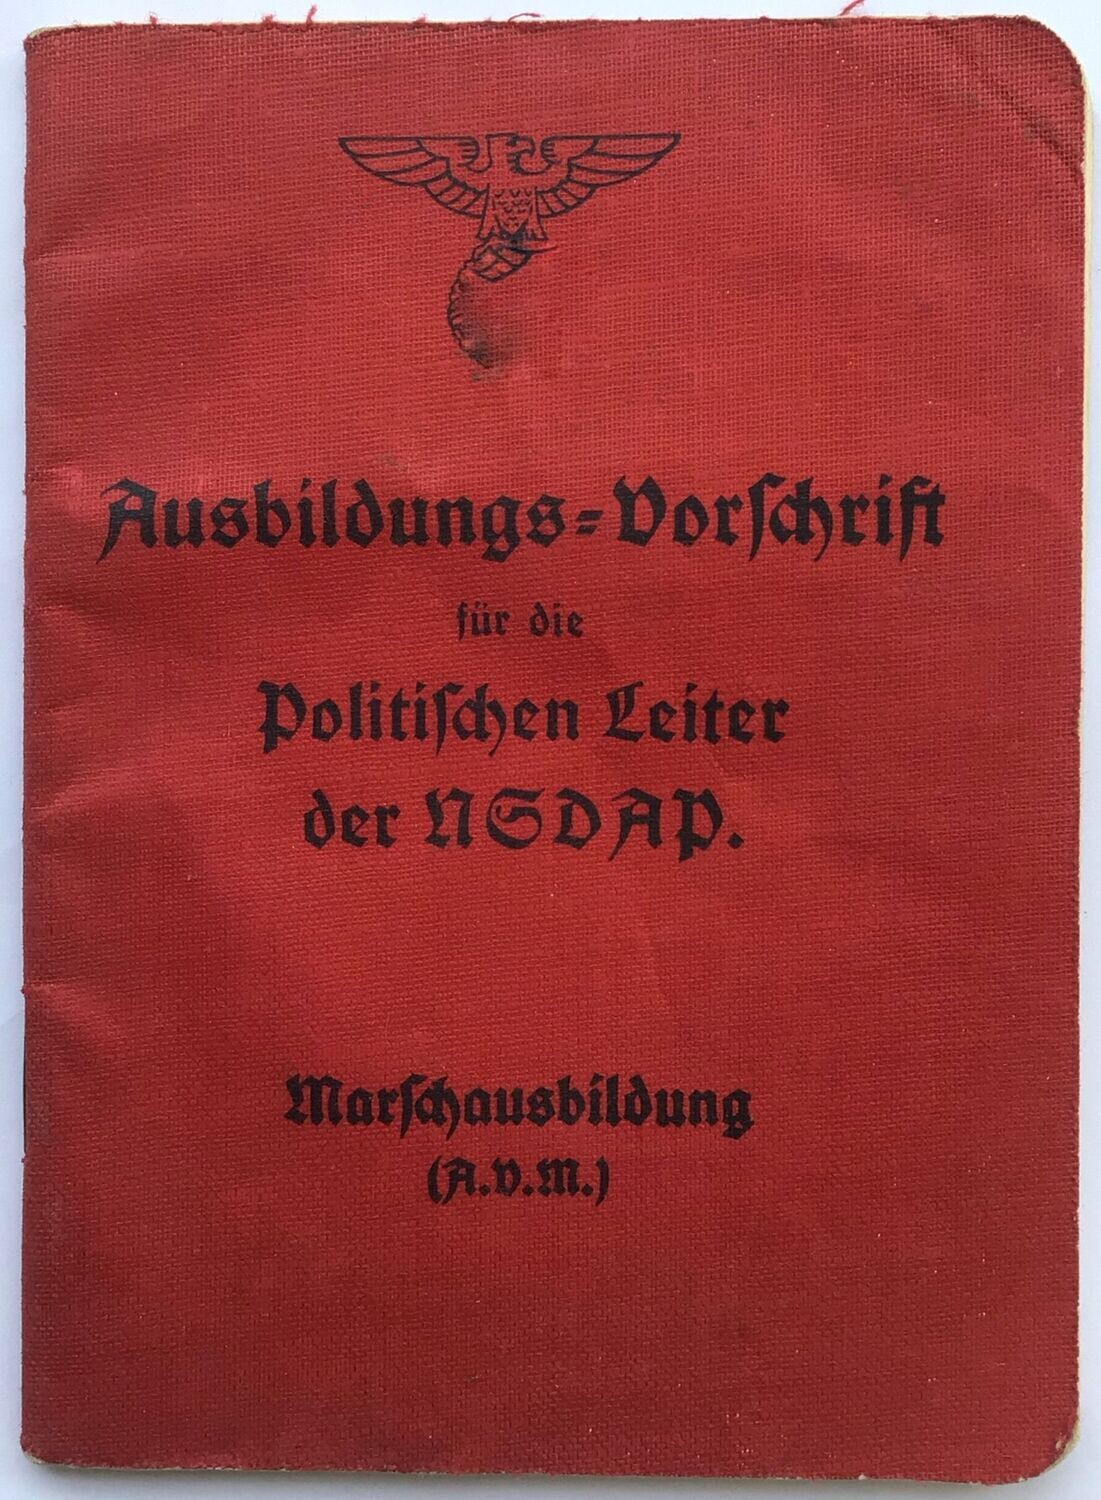 Ausbildungs-Vorschrift für die Politischen Leiter der NSDAP. - Marschausbildung (A.V.M.) - Broschierte Ausgabe aus dem Jahr 1935